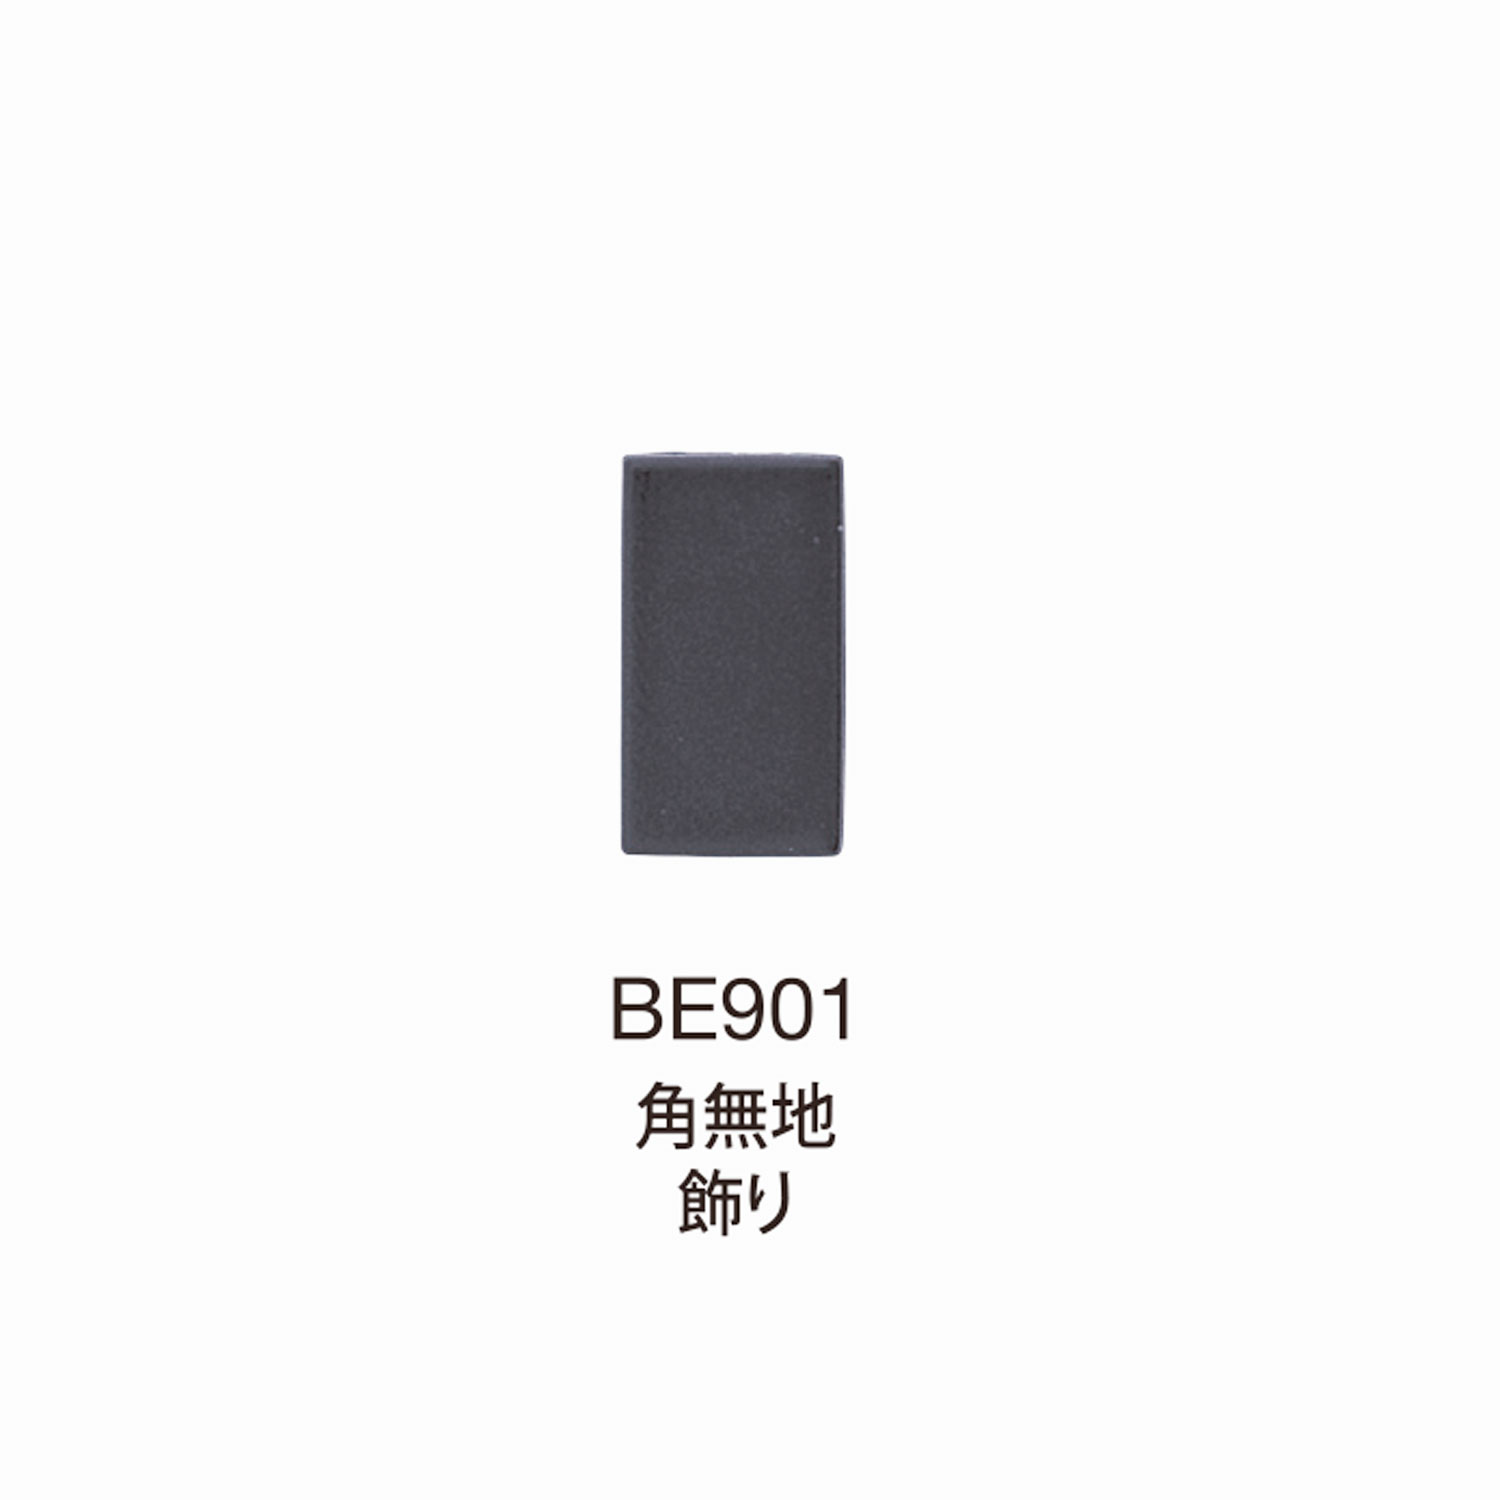 BE901 BEREX α Top Hardware Corner Keine Musterdekoration[Schnallen Und Ring] Morito